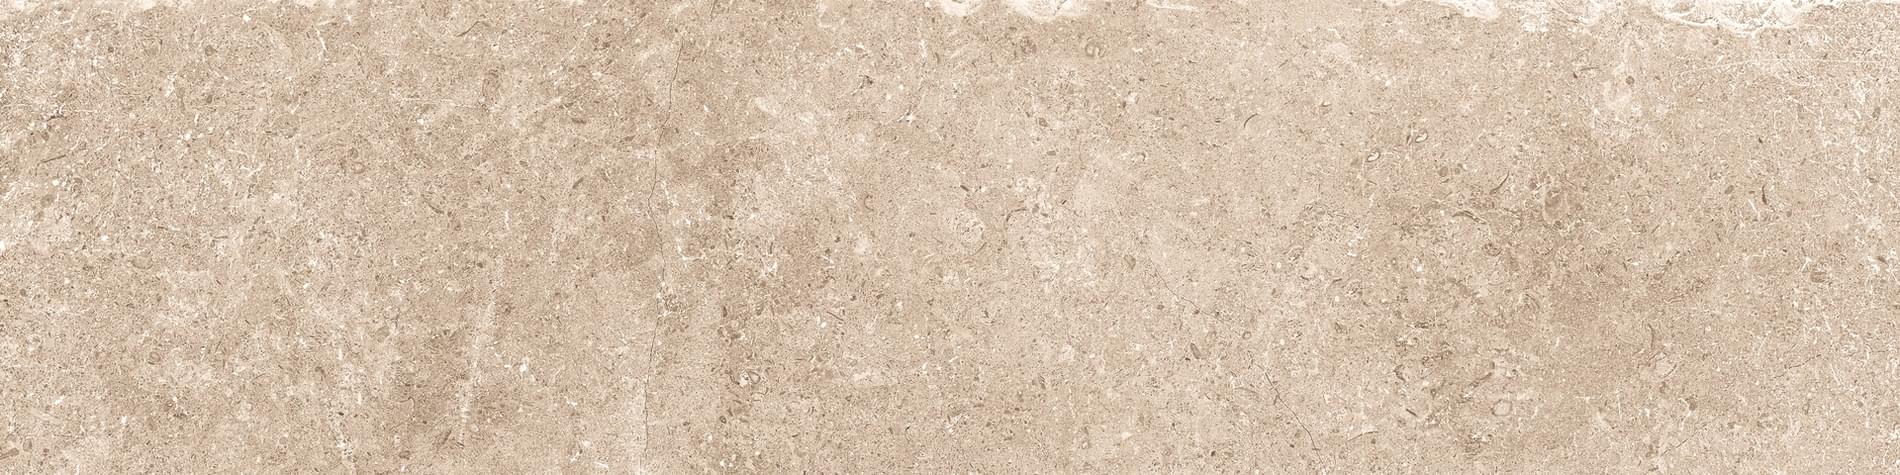 Panaria Prime Stone Sand Strutturato 15x60